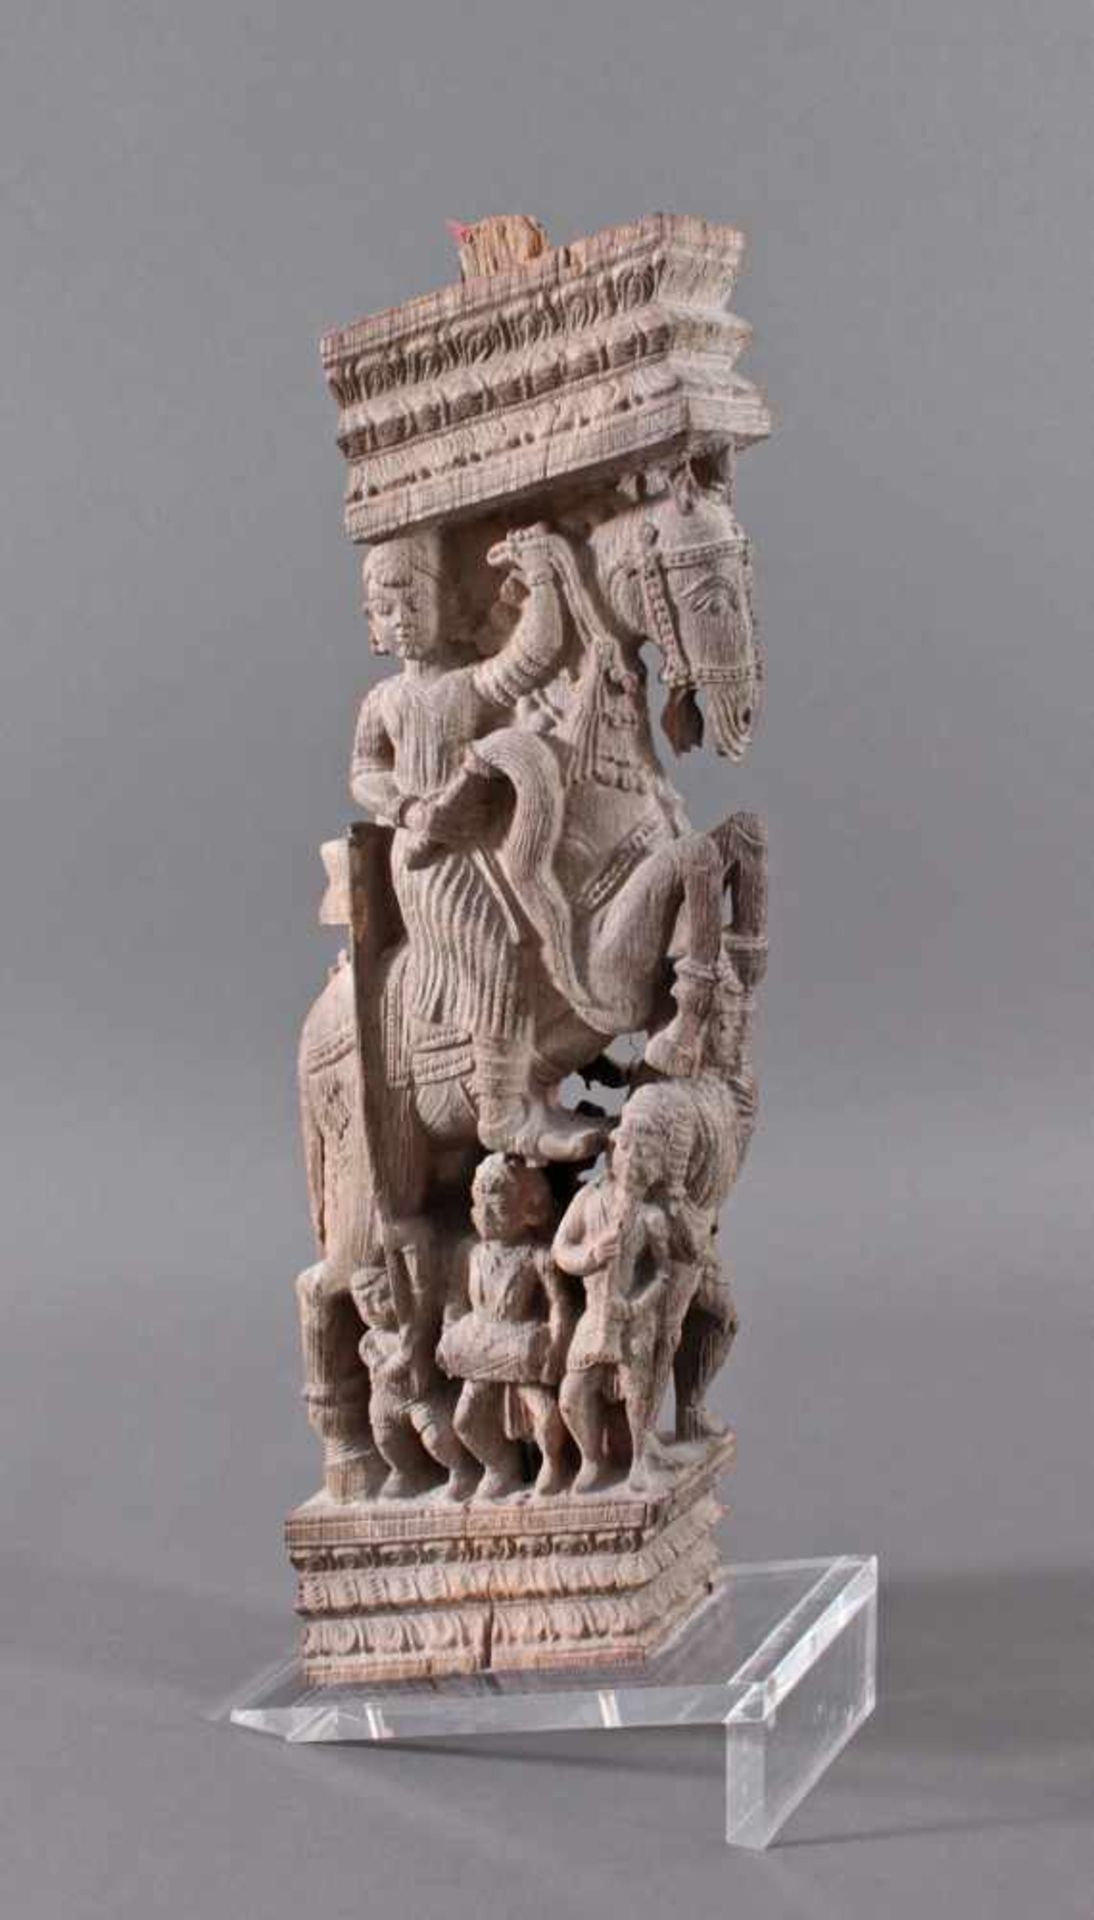 Holzplastik eines Reiters auf einem Pferd, Indien wohl Orissa 15./16. Jh.Aus einem Tempel, plastisch